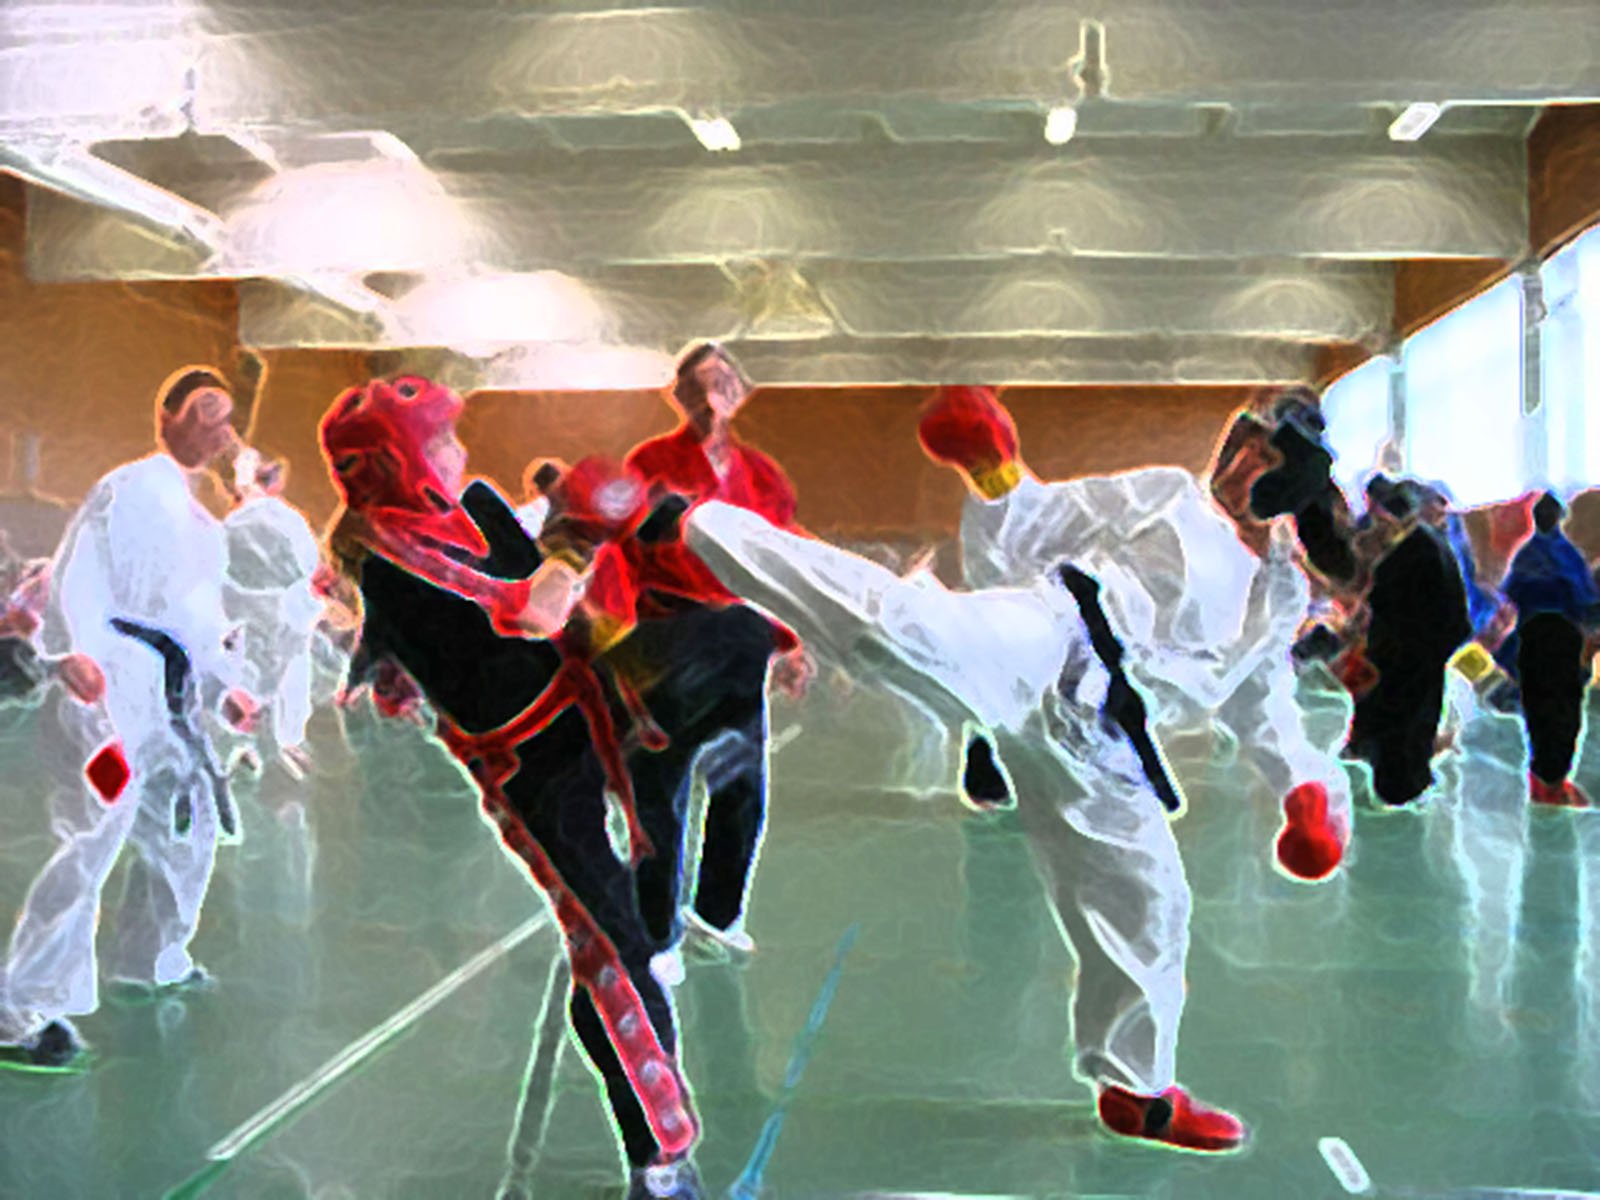 2 Kickboxer kämpfen umgeben von einem Trainer und Schülern